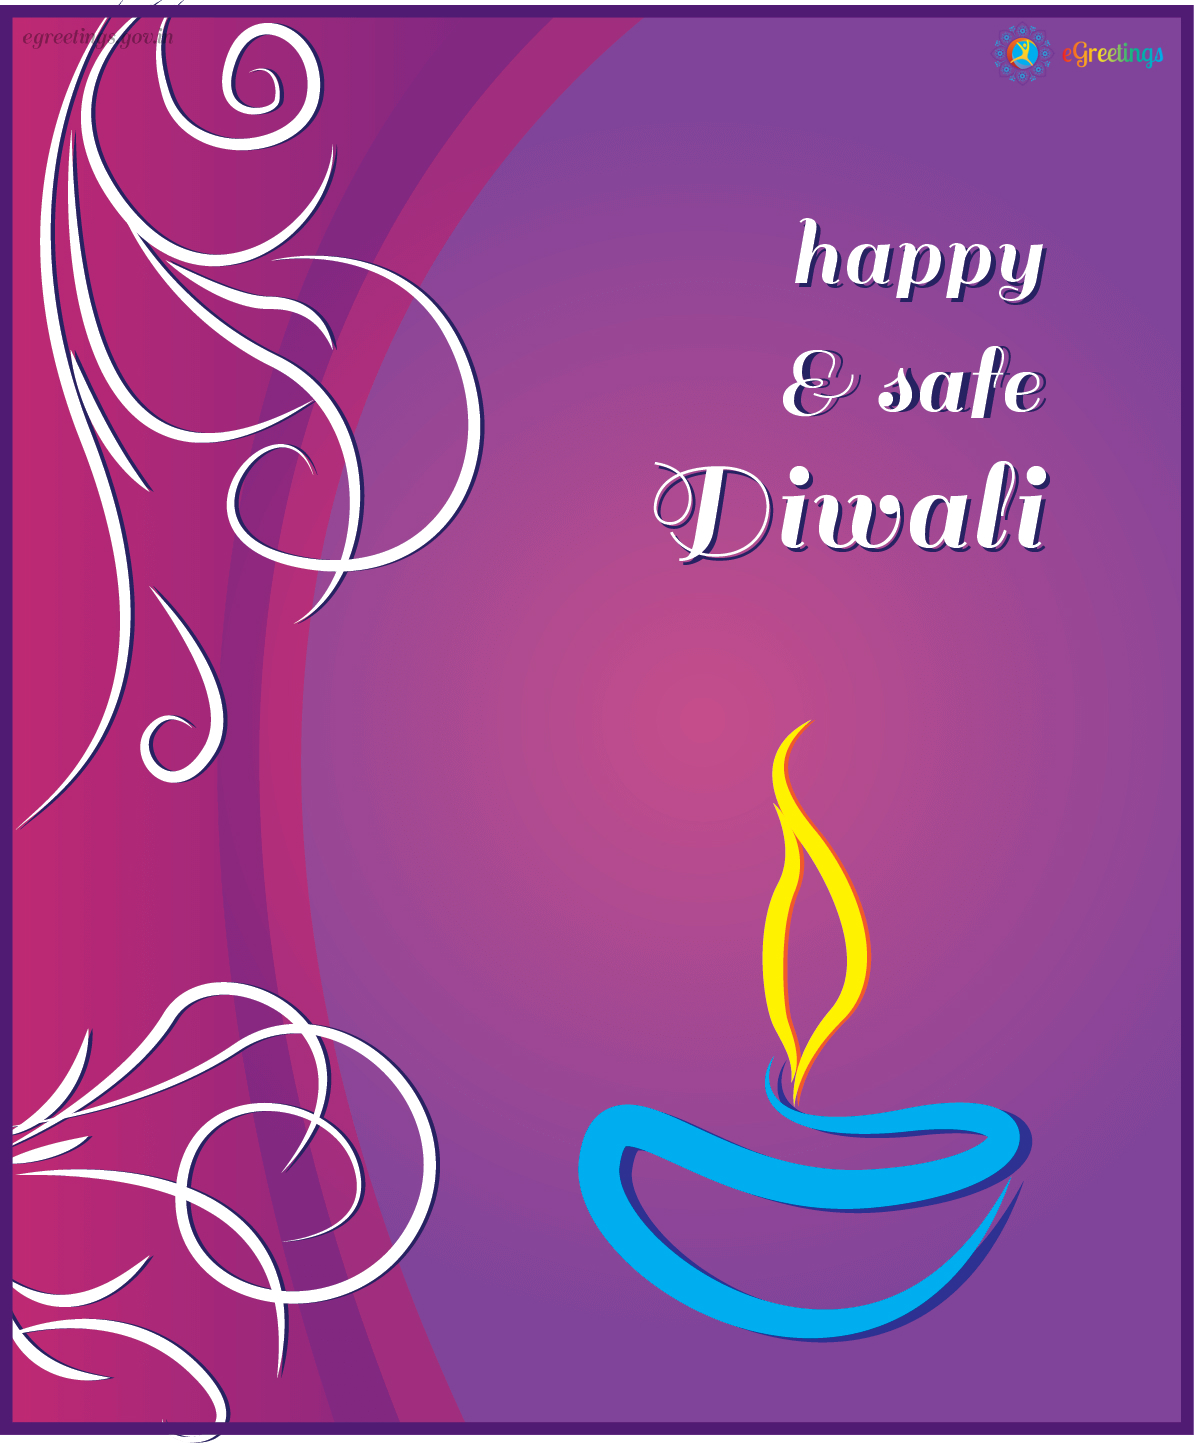 Diwali | eGreetings Portal